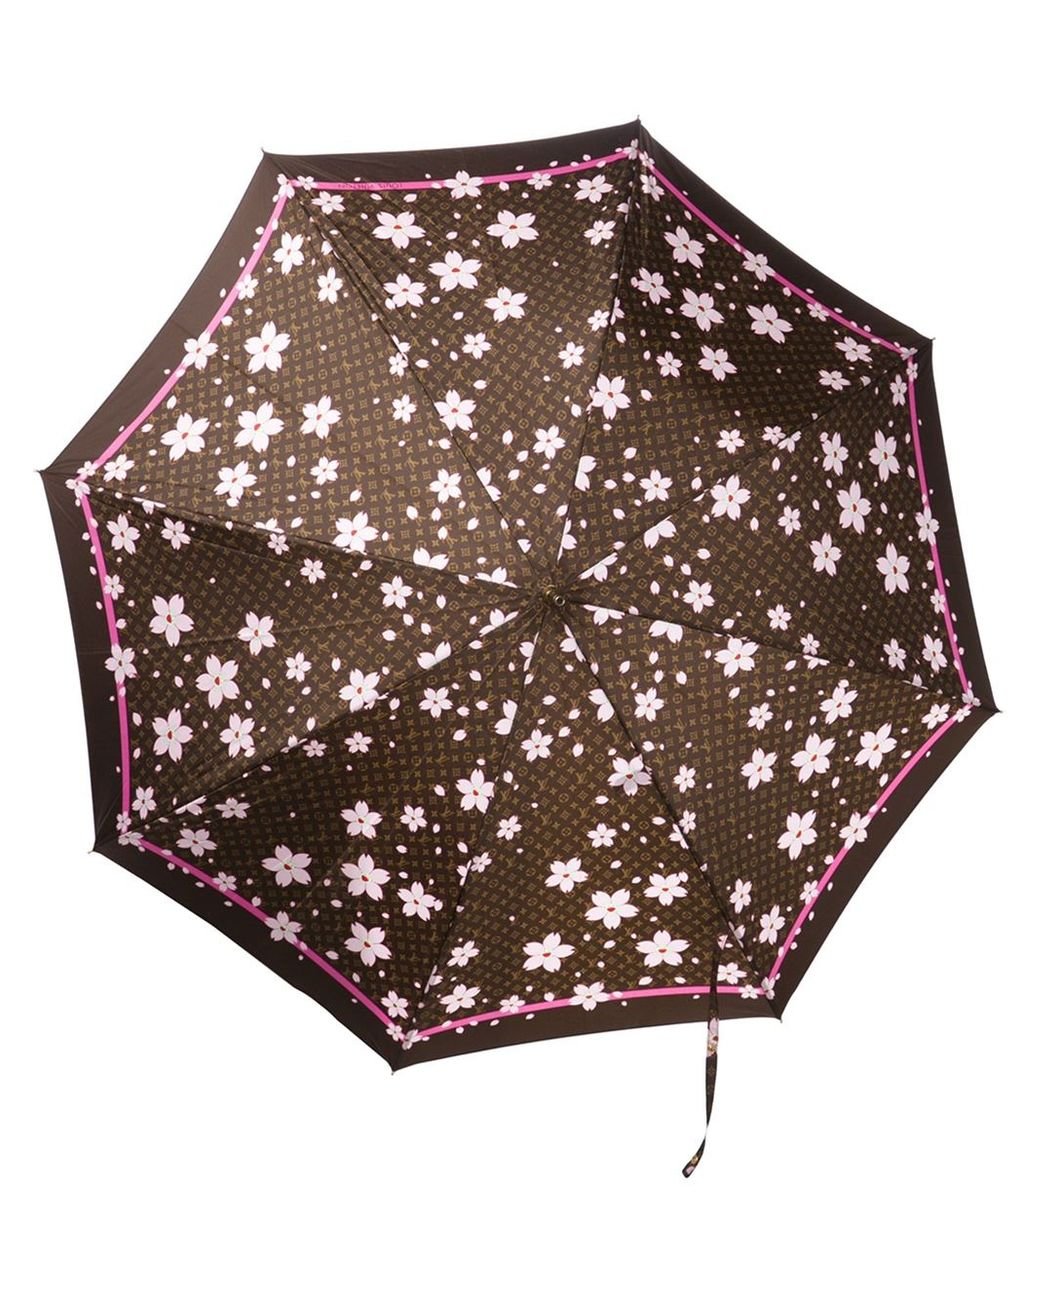 Auth Louis Vuitton Cherry Blossom Parapului Umbrella 1C100150n